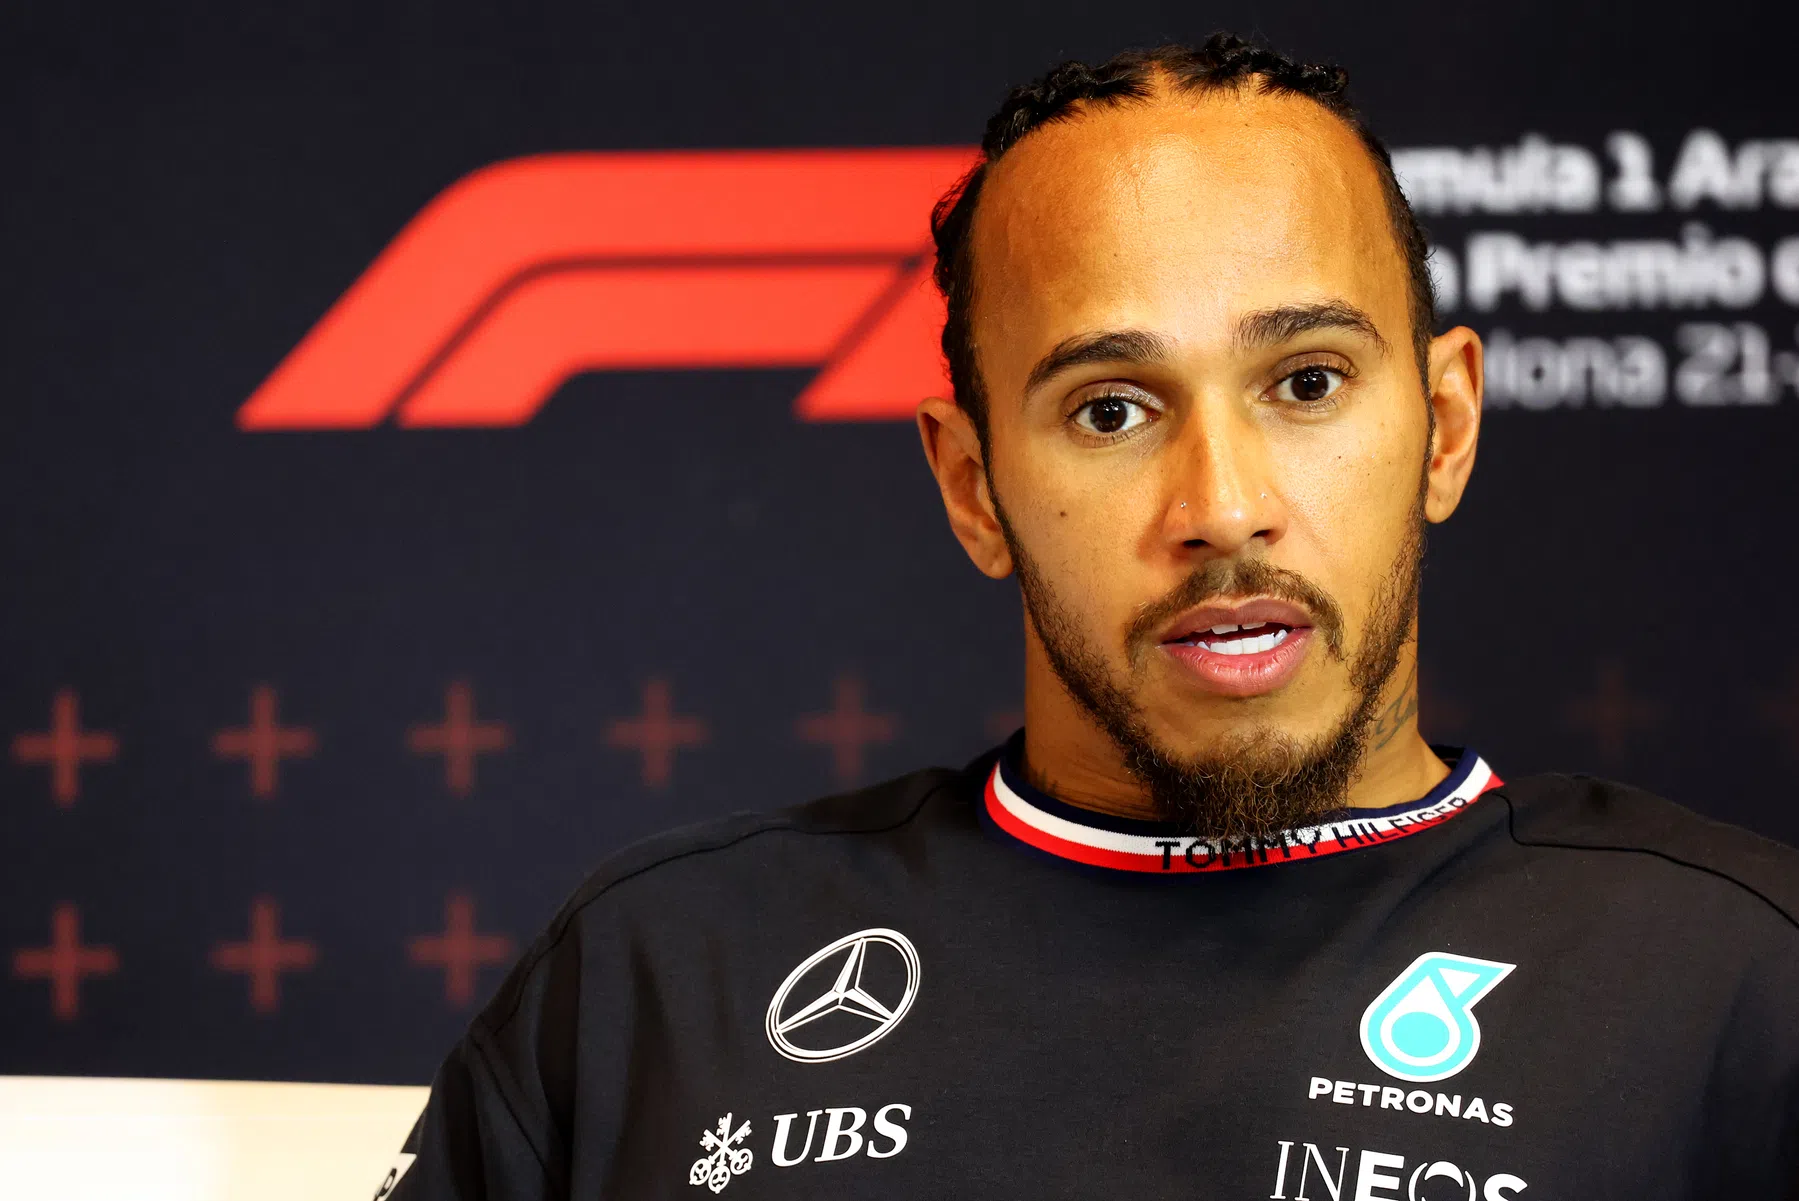 Hamilton on solving his qualifying struggles 